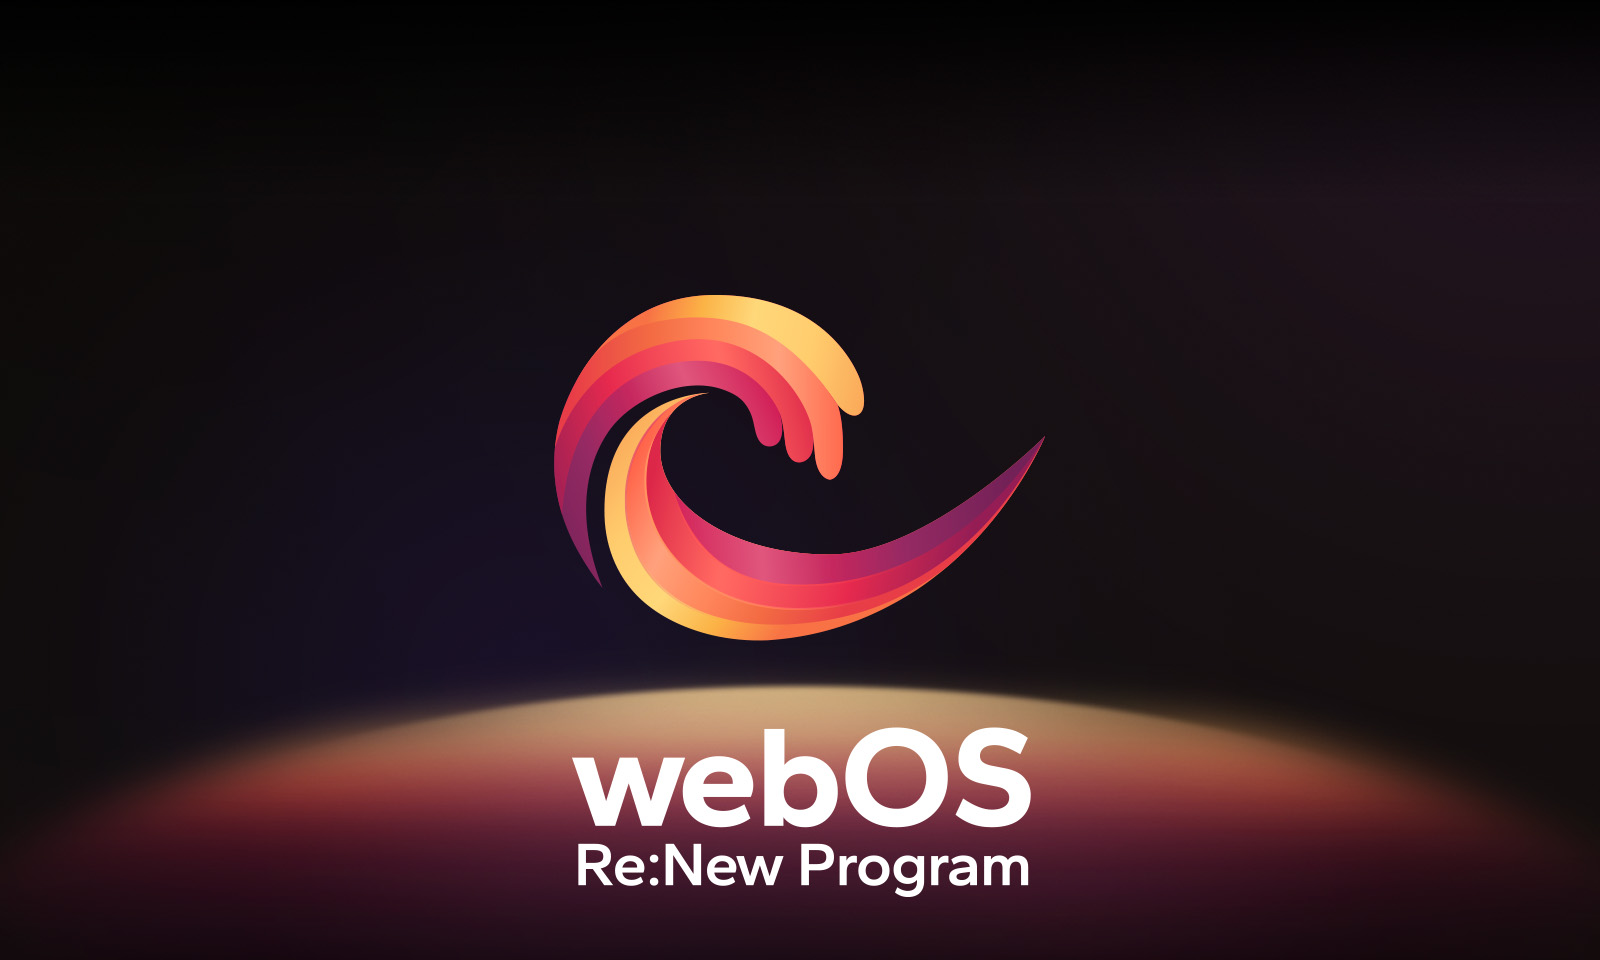 Het webOS-logo zweeft in het midden tegen een zwarte achtergrond en de ruimte eronder wordt opgelicht met de logokleuren rood, oranje en geel. De woorden “webOS Re:New Program” verschijnen onder het logo.